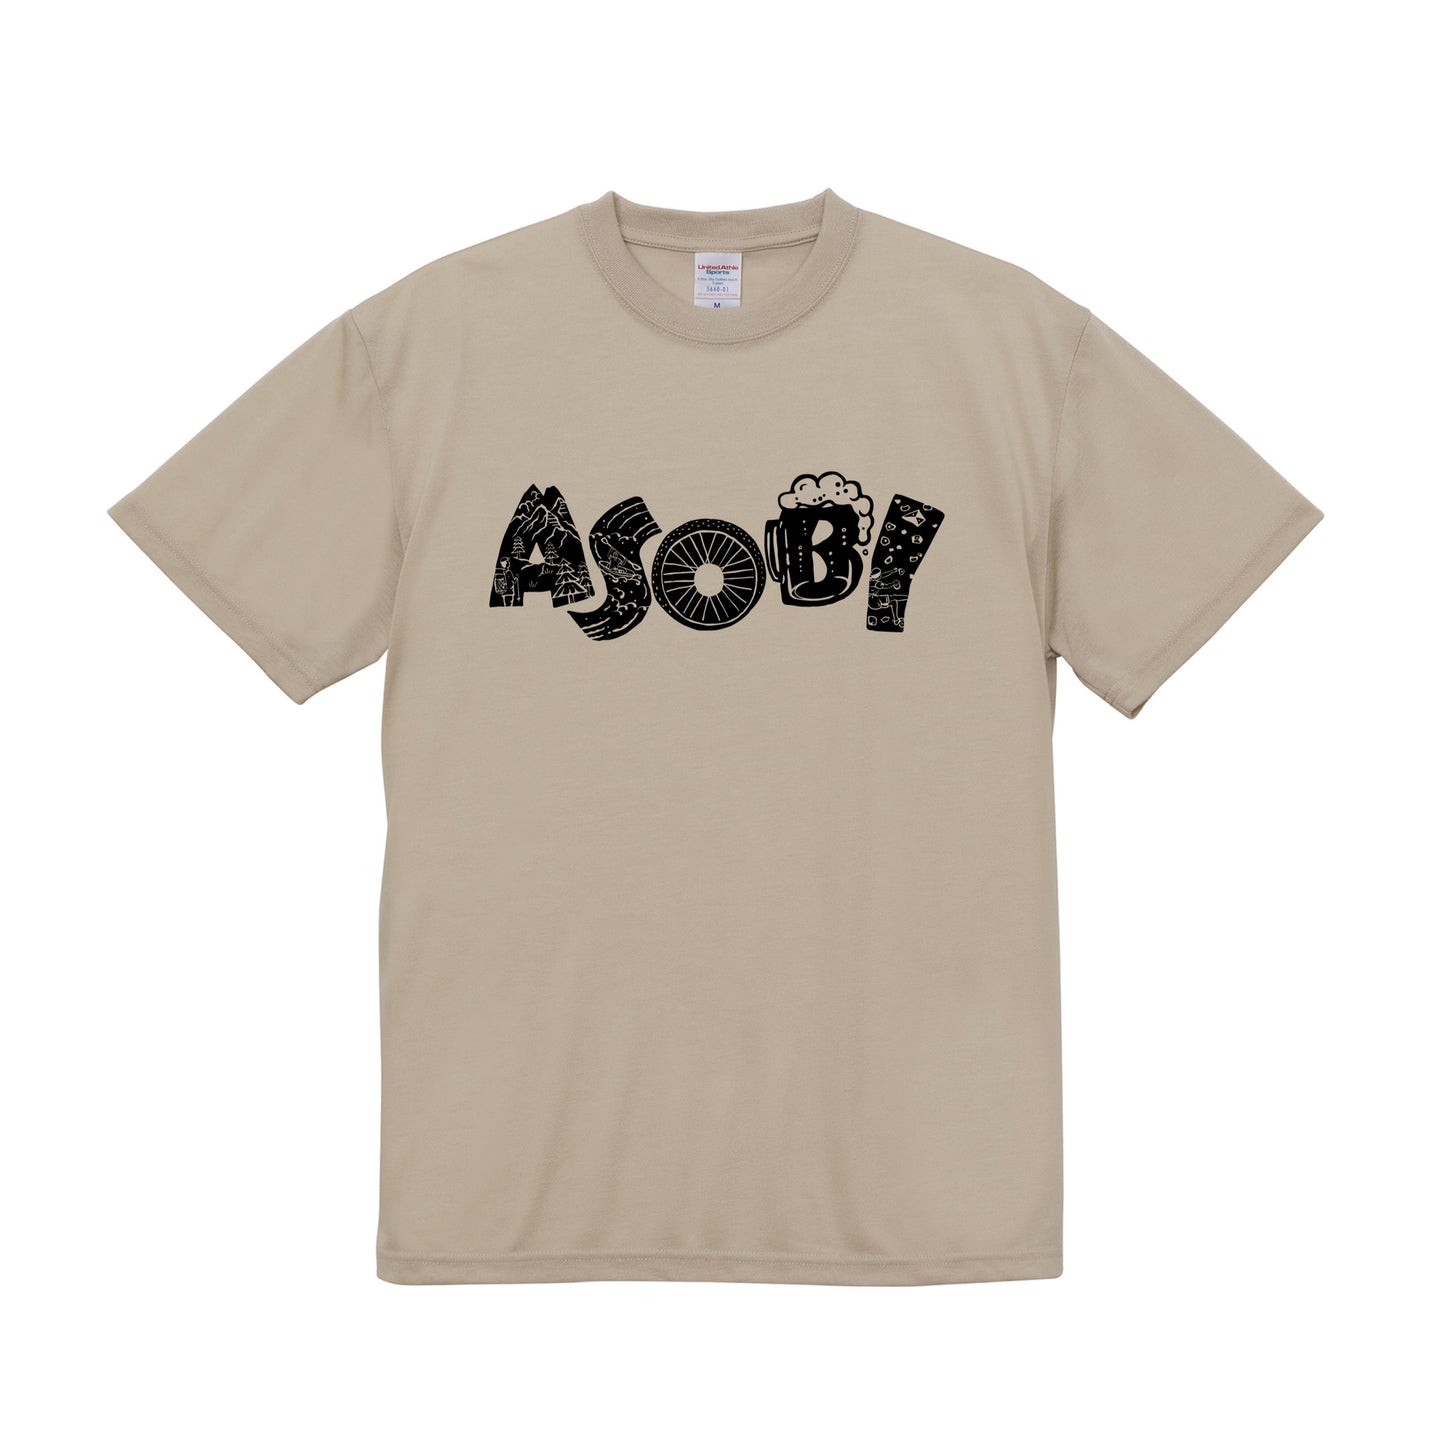 ASOBI T-shirt